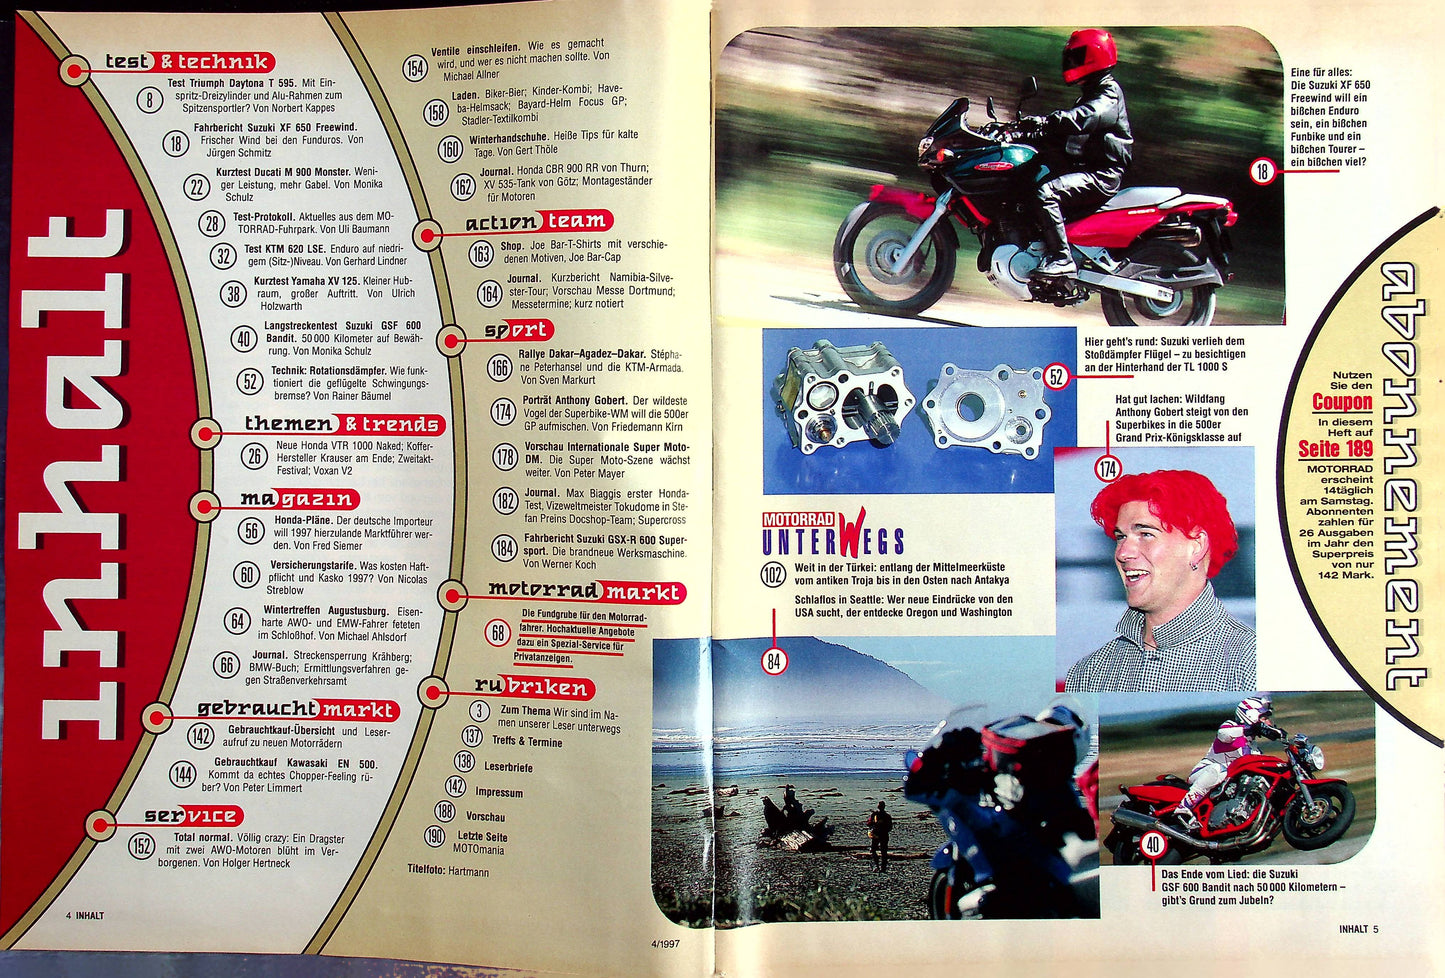 Motorrad 04/1997